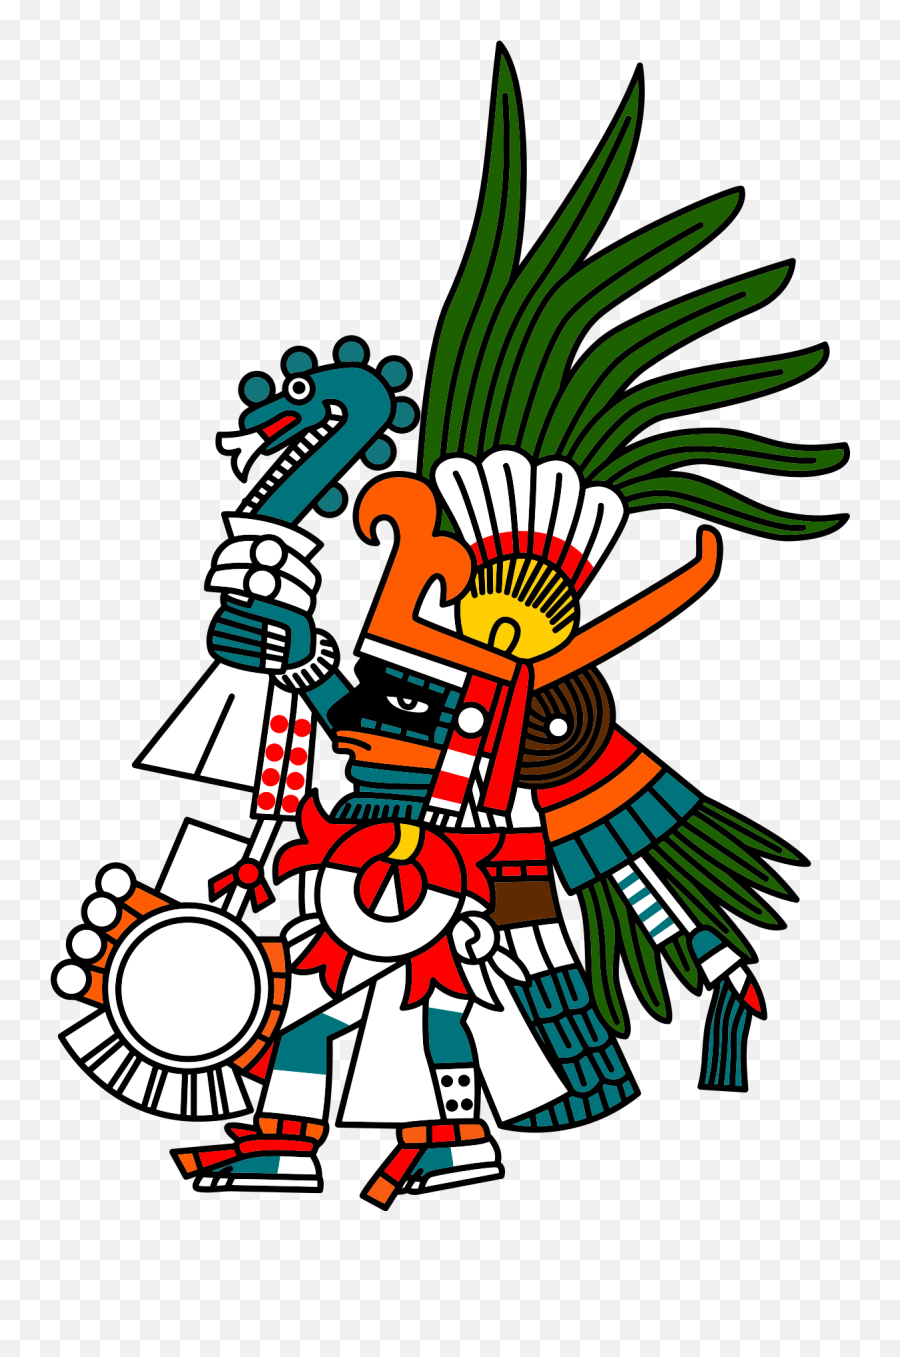 Hutzilpchtli - Wikipedia Aztec God Huitzilopochtli Png,Leafy Is Here Icon